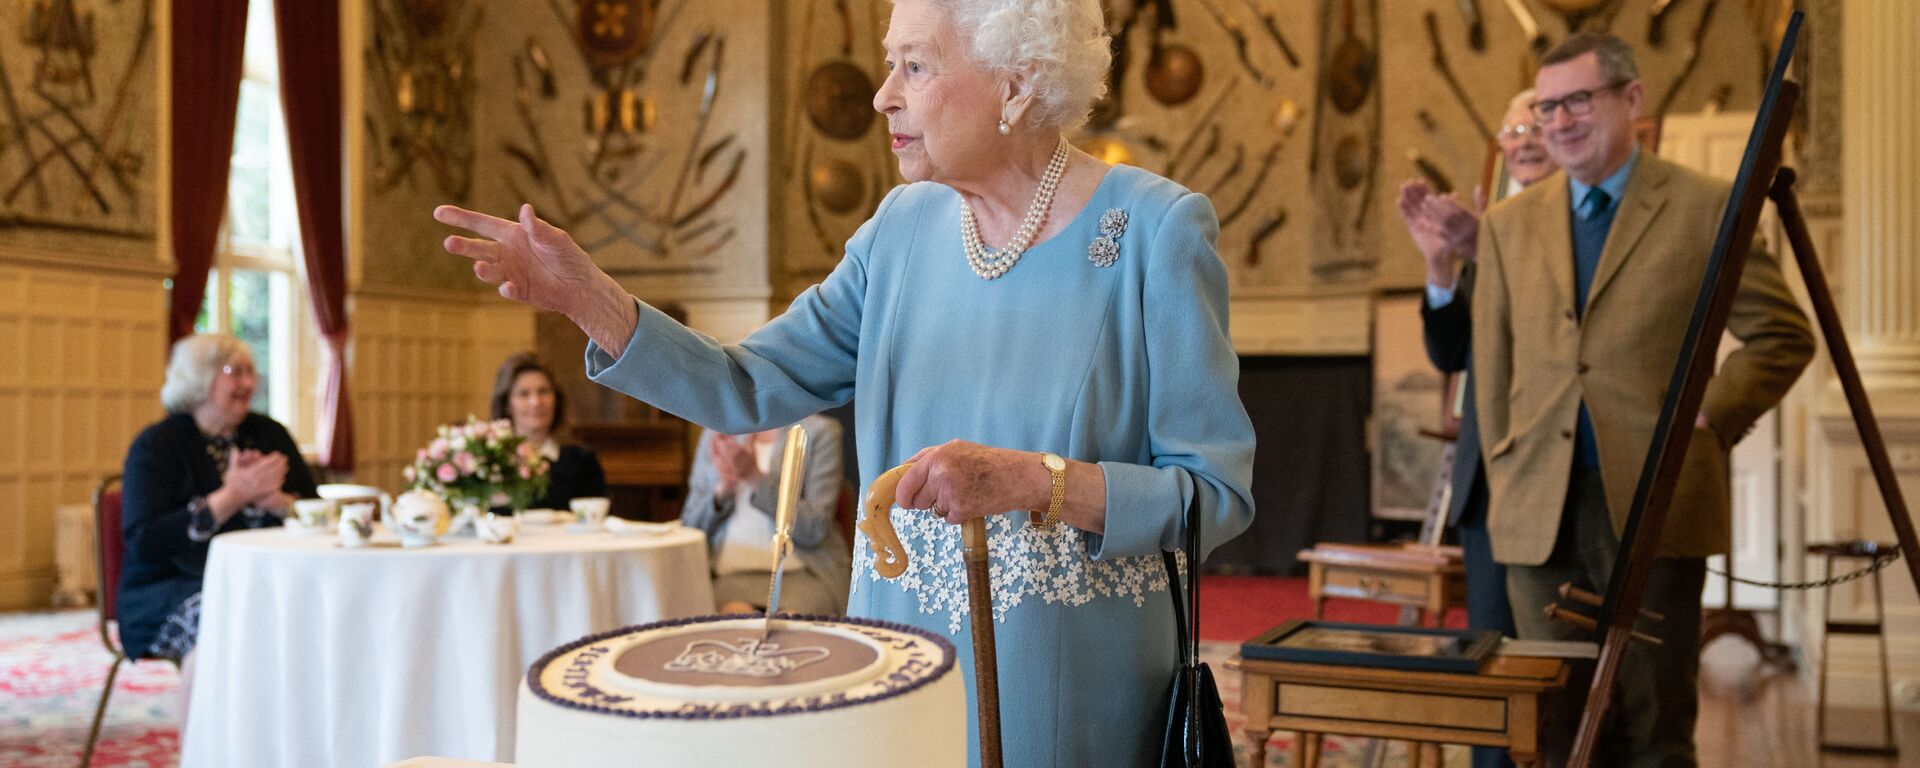 ملكة بريطانيا إليزابيث الثانية تقطع كعكة للاحتفال ببدء اليوبيل البلاتيني خلال حفل استقبال في قاعة الاحتفالات في ساندرينغهام هاوس، مقر إقامة الملكة في نورفولك في 5 فبراير 2022. - سبوتنيك عربي, 1920, 04.06.2022